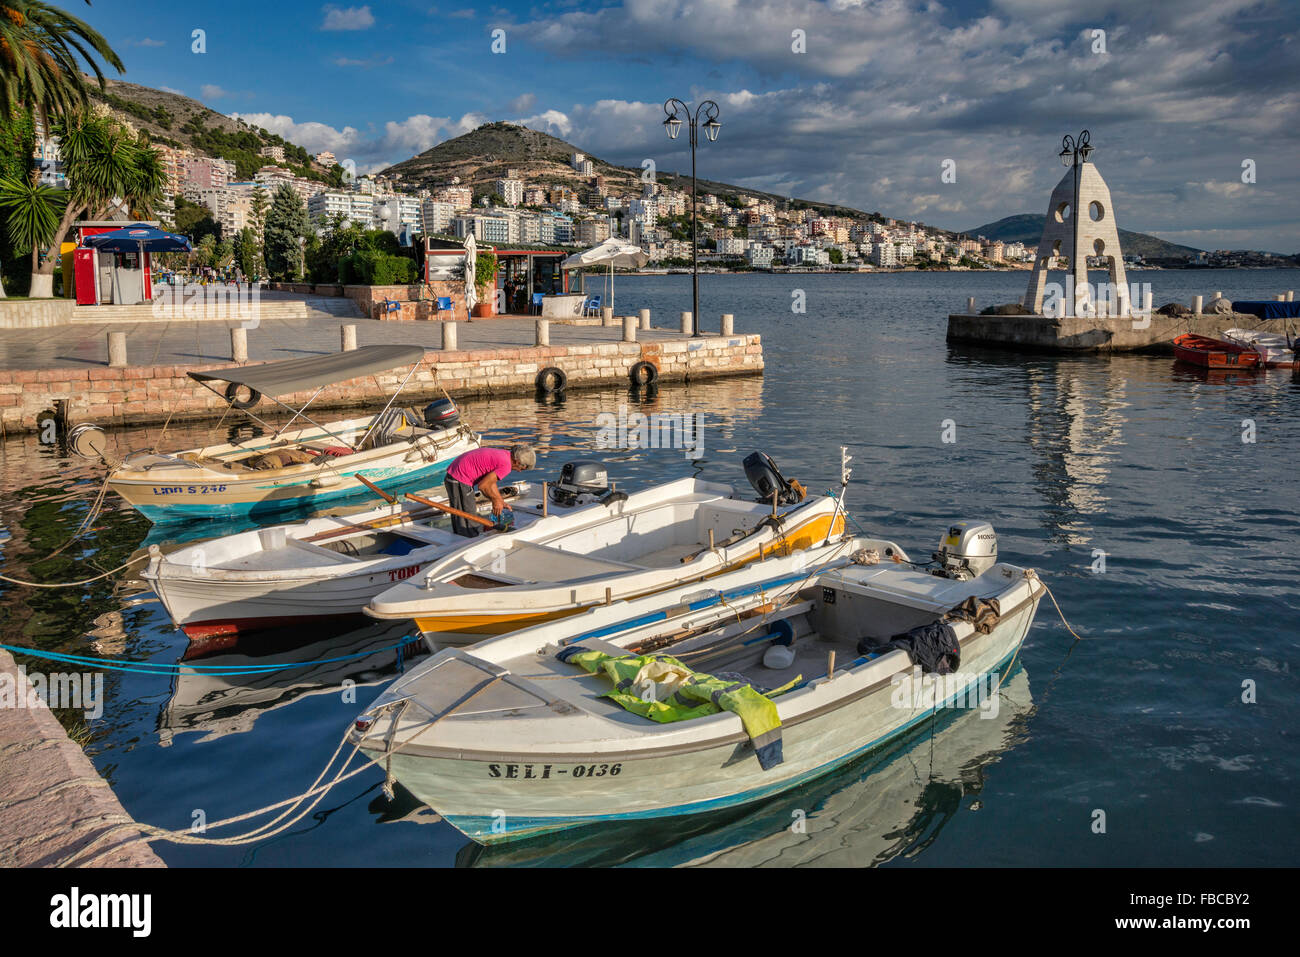 Boats at harbor, Saranda seafront, Ionian Sea coast in Saranda (Sarande), Albanian Riviera, Albania Stock Photo